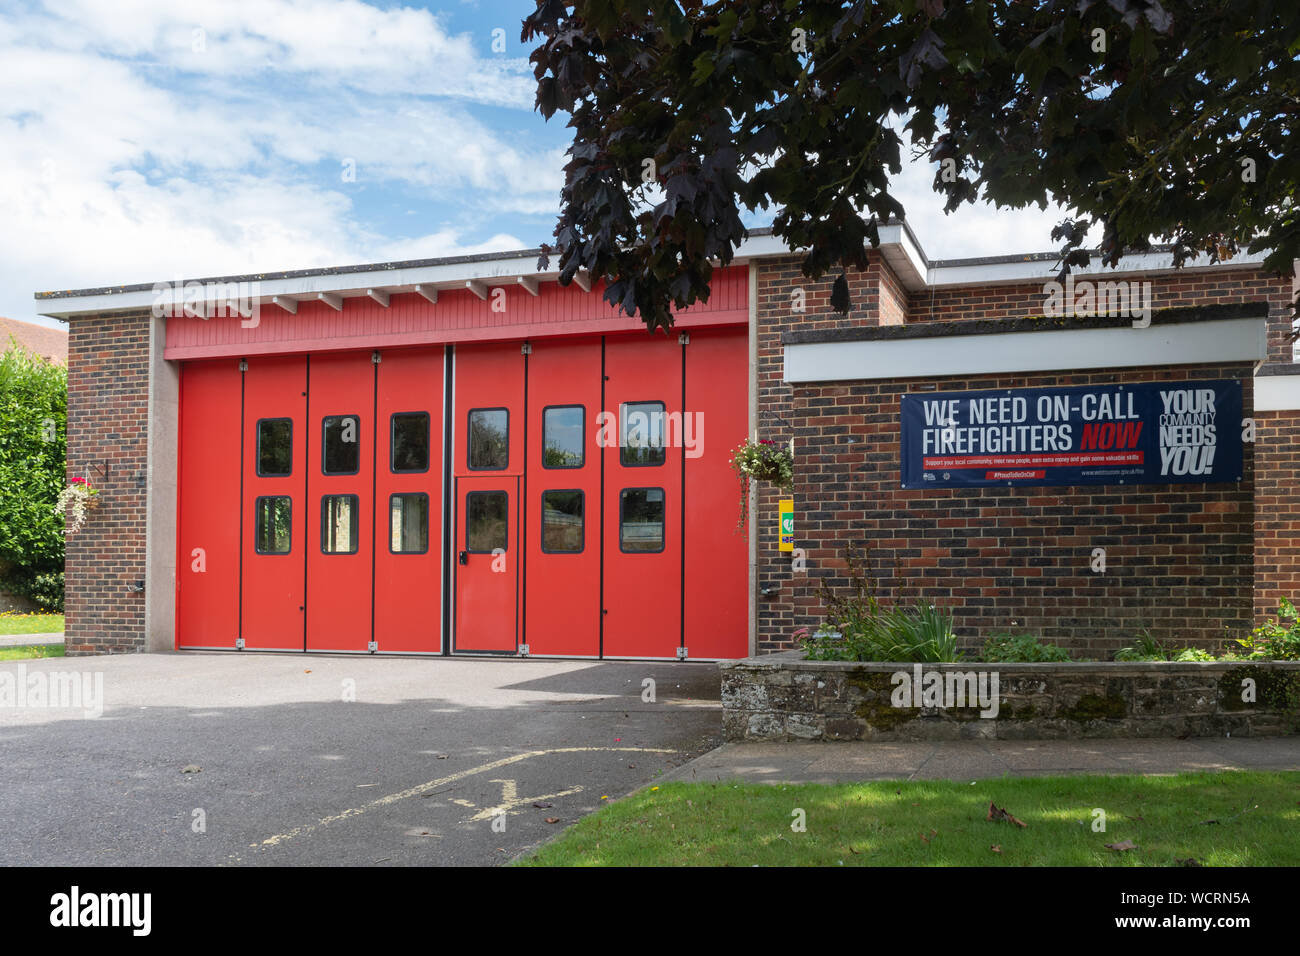 La estación de bomberos con la contratación firmar o banner para llamar a los bomberos, tu comunidad necesita, Petworth, West Sussex, UK Foto de stock